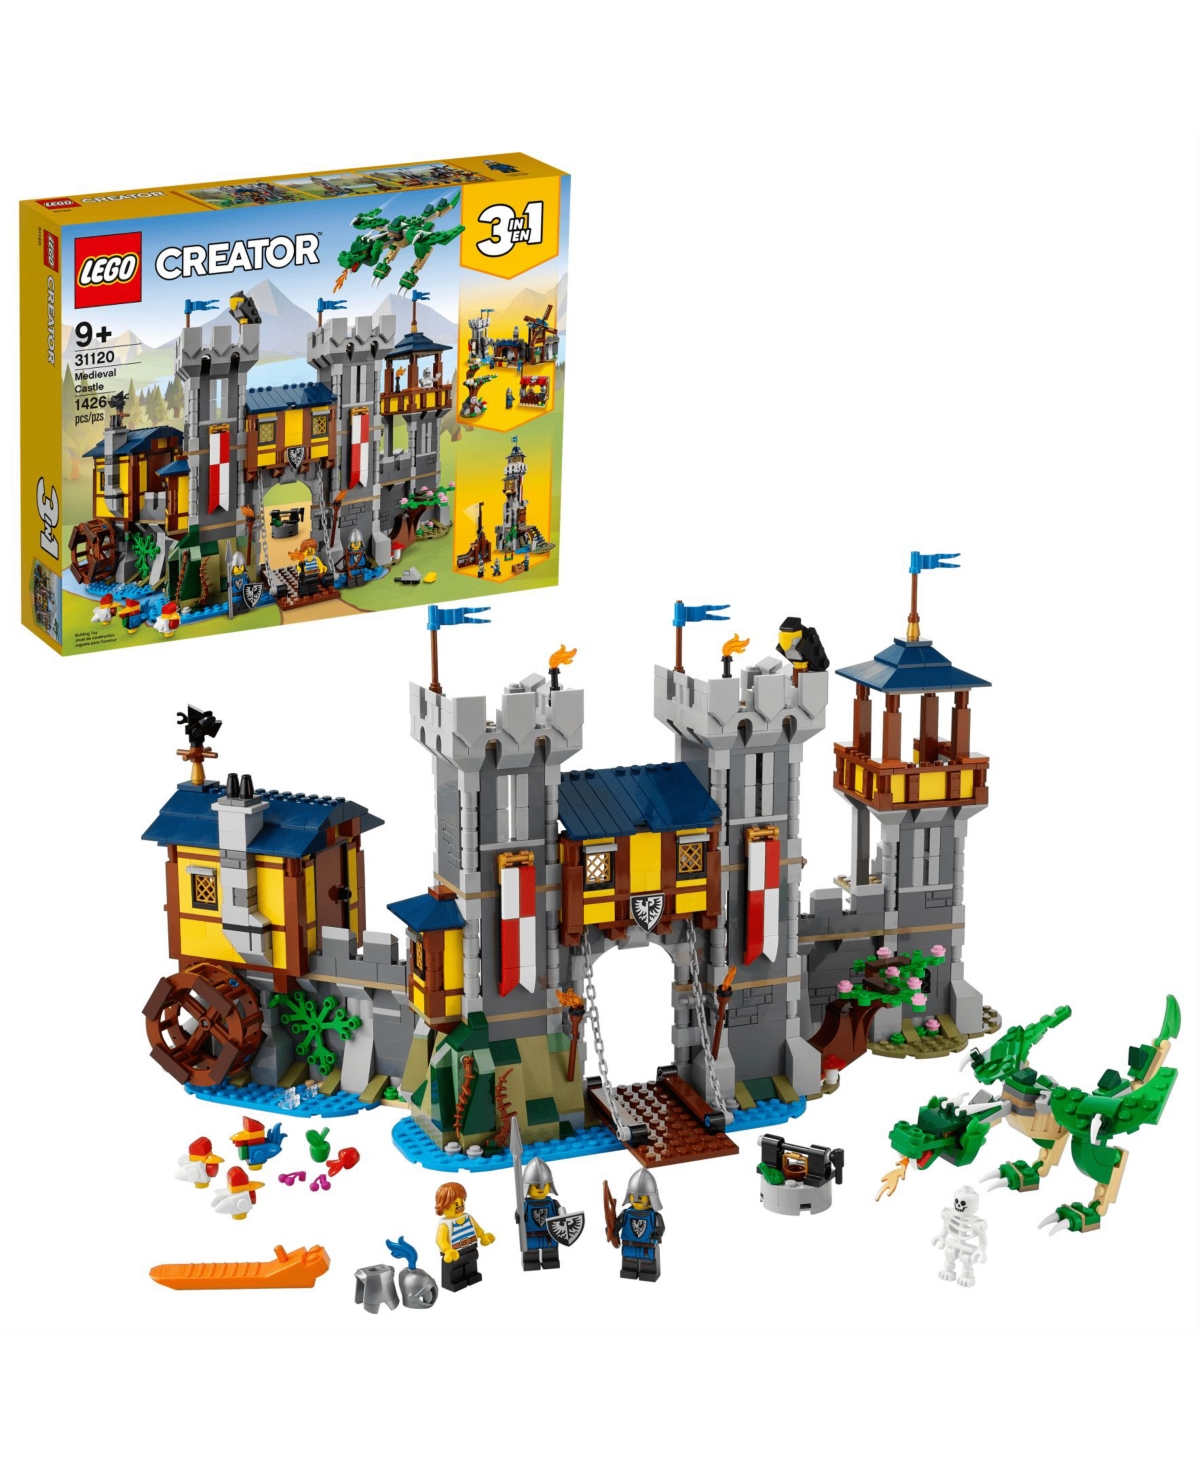 Lego Medieval Castle 1426 Pieces Toy Set In No Color